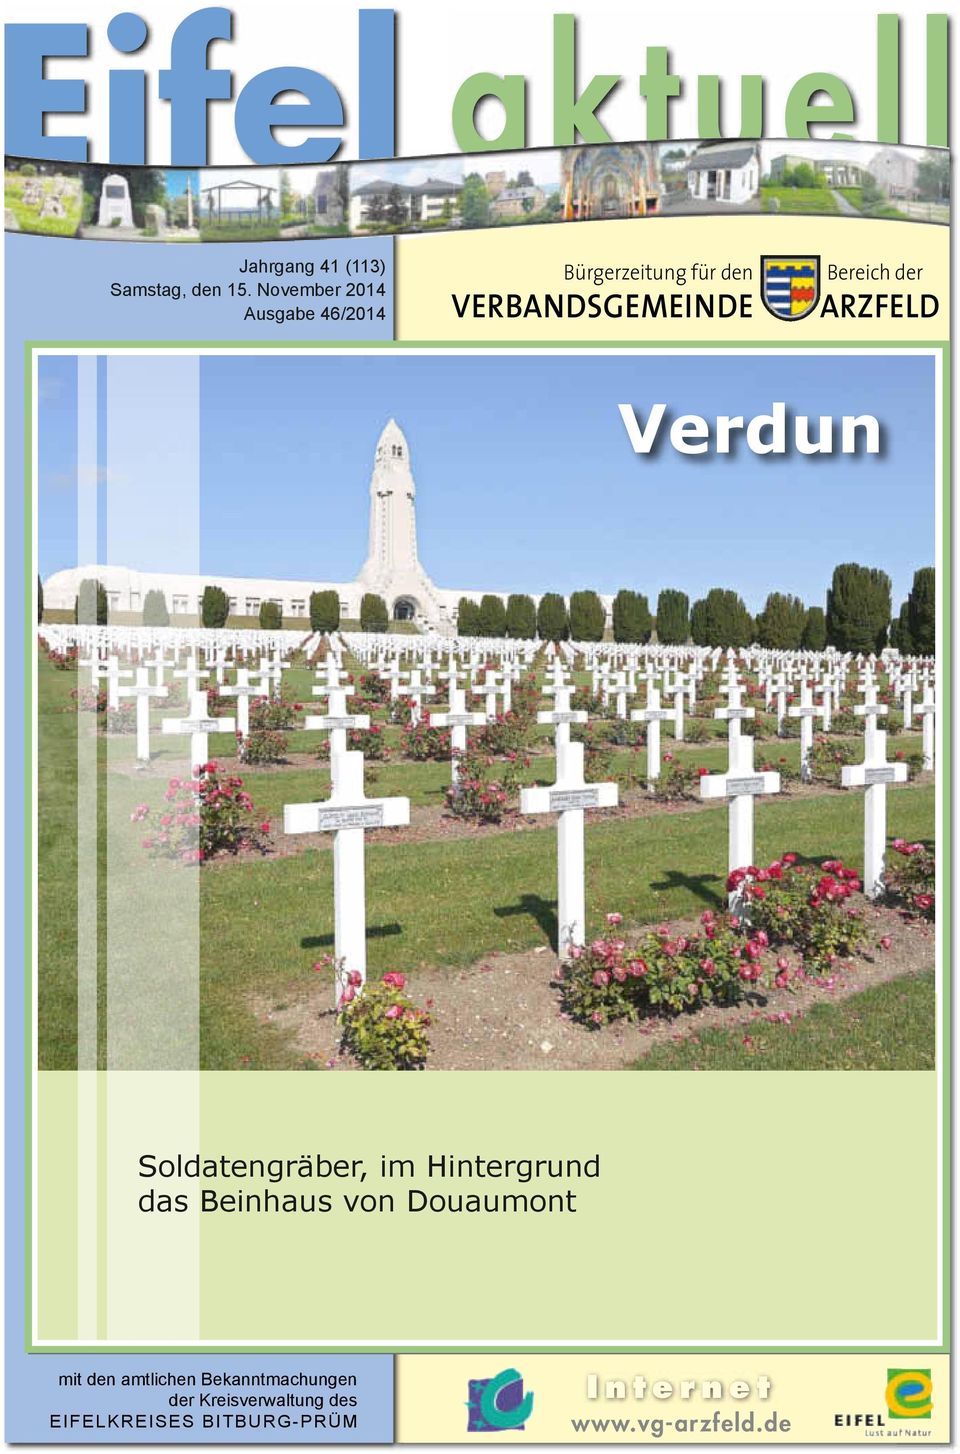 VERBANDSGEMEINDE Bereich der ARZFELD Verdun